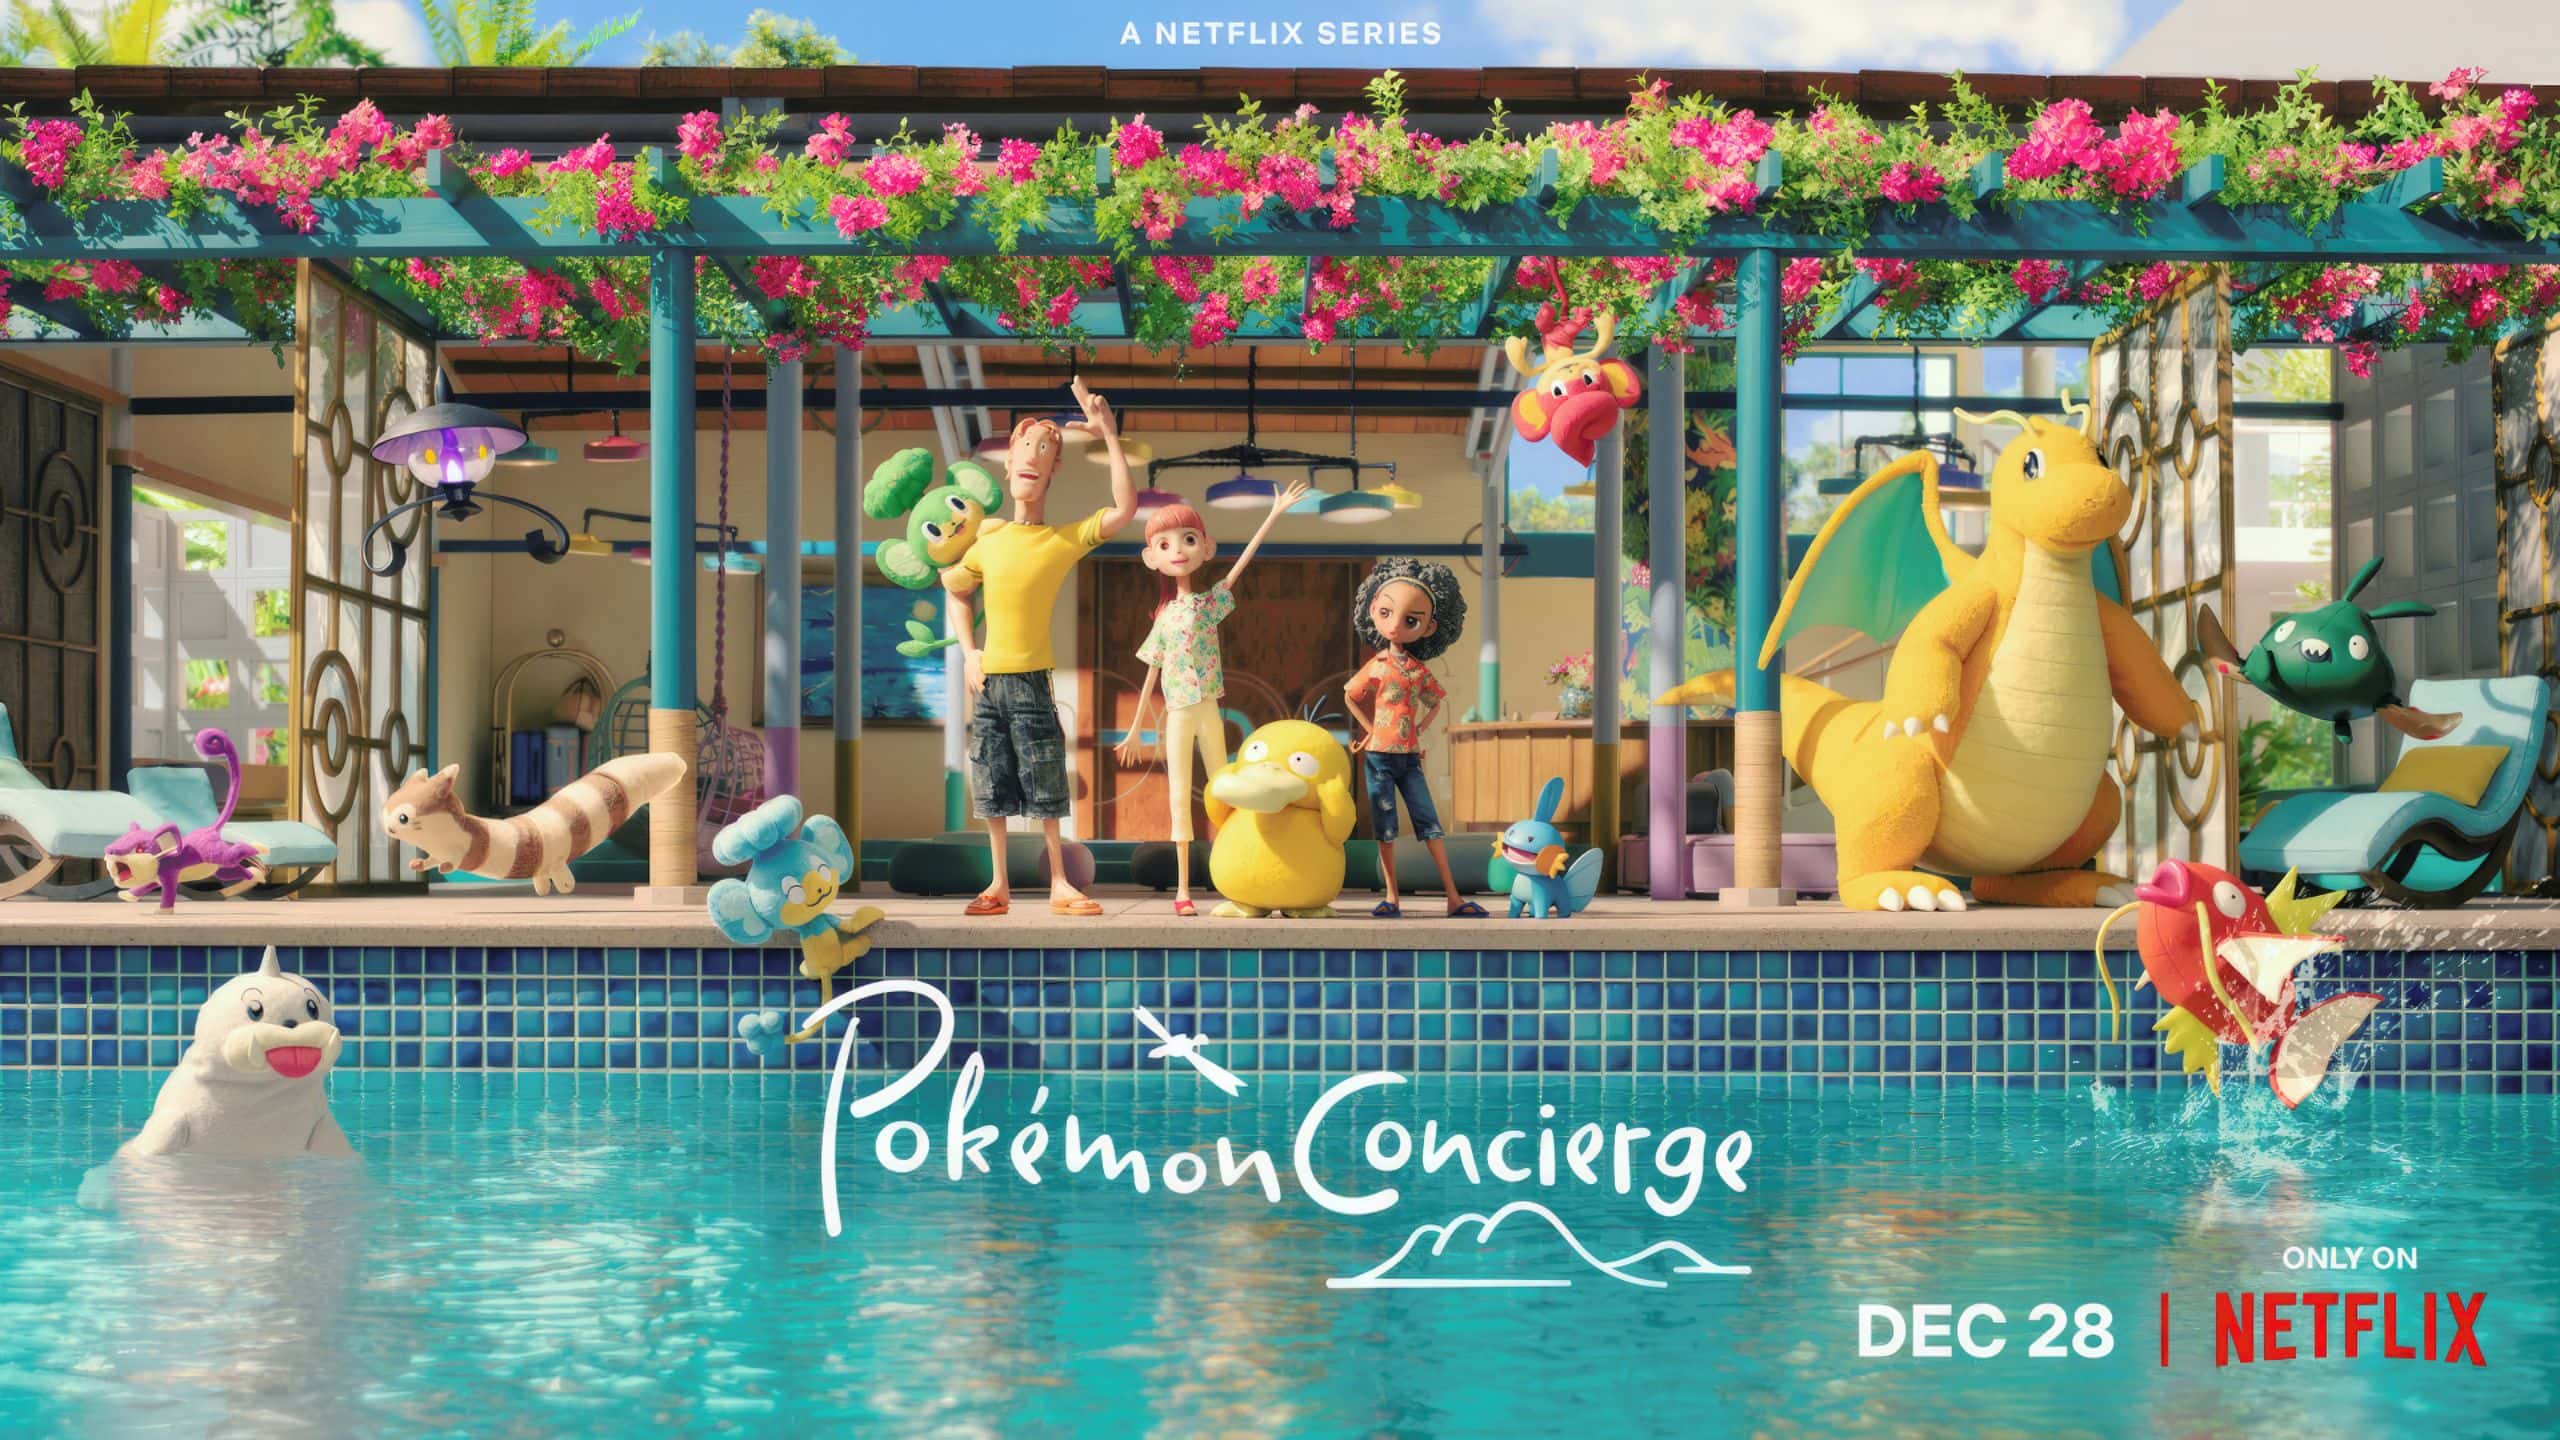 Pokémon Concierge Official Poster